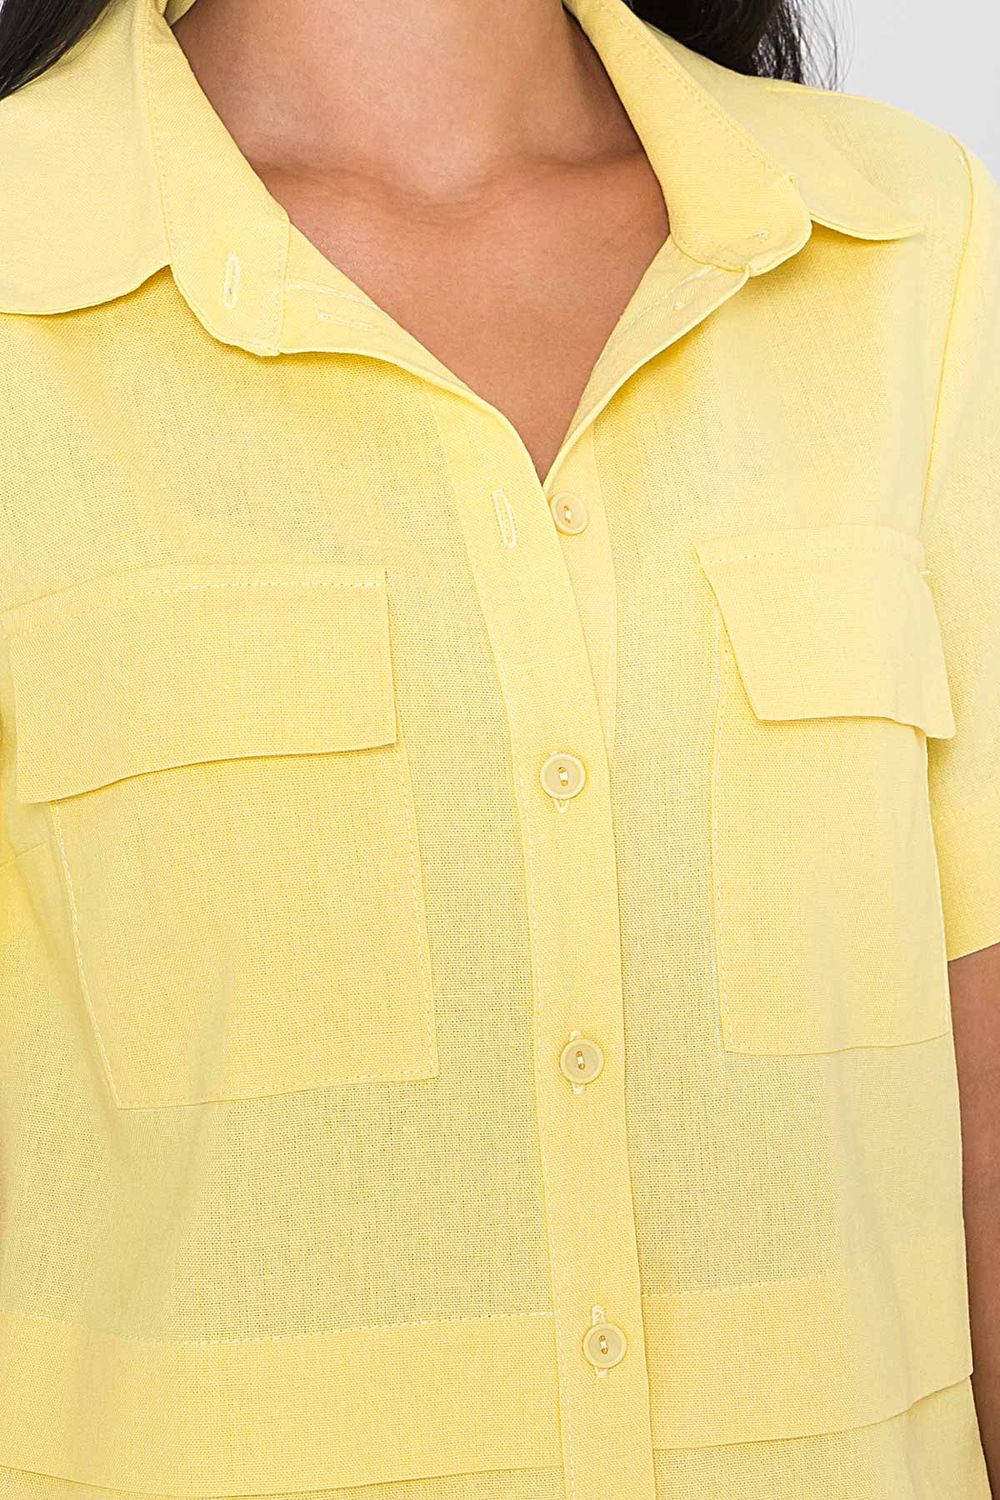 Женский летний костюм с шортами желтого цвета - фото